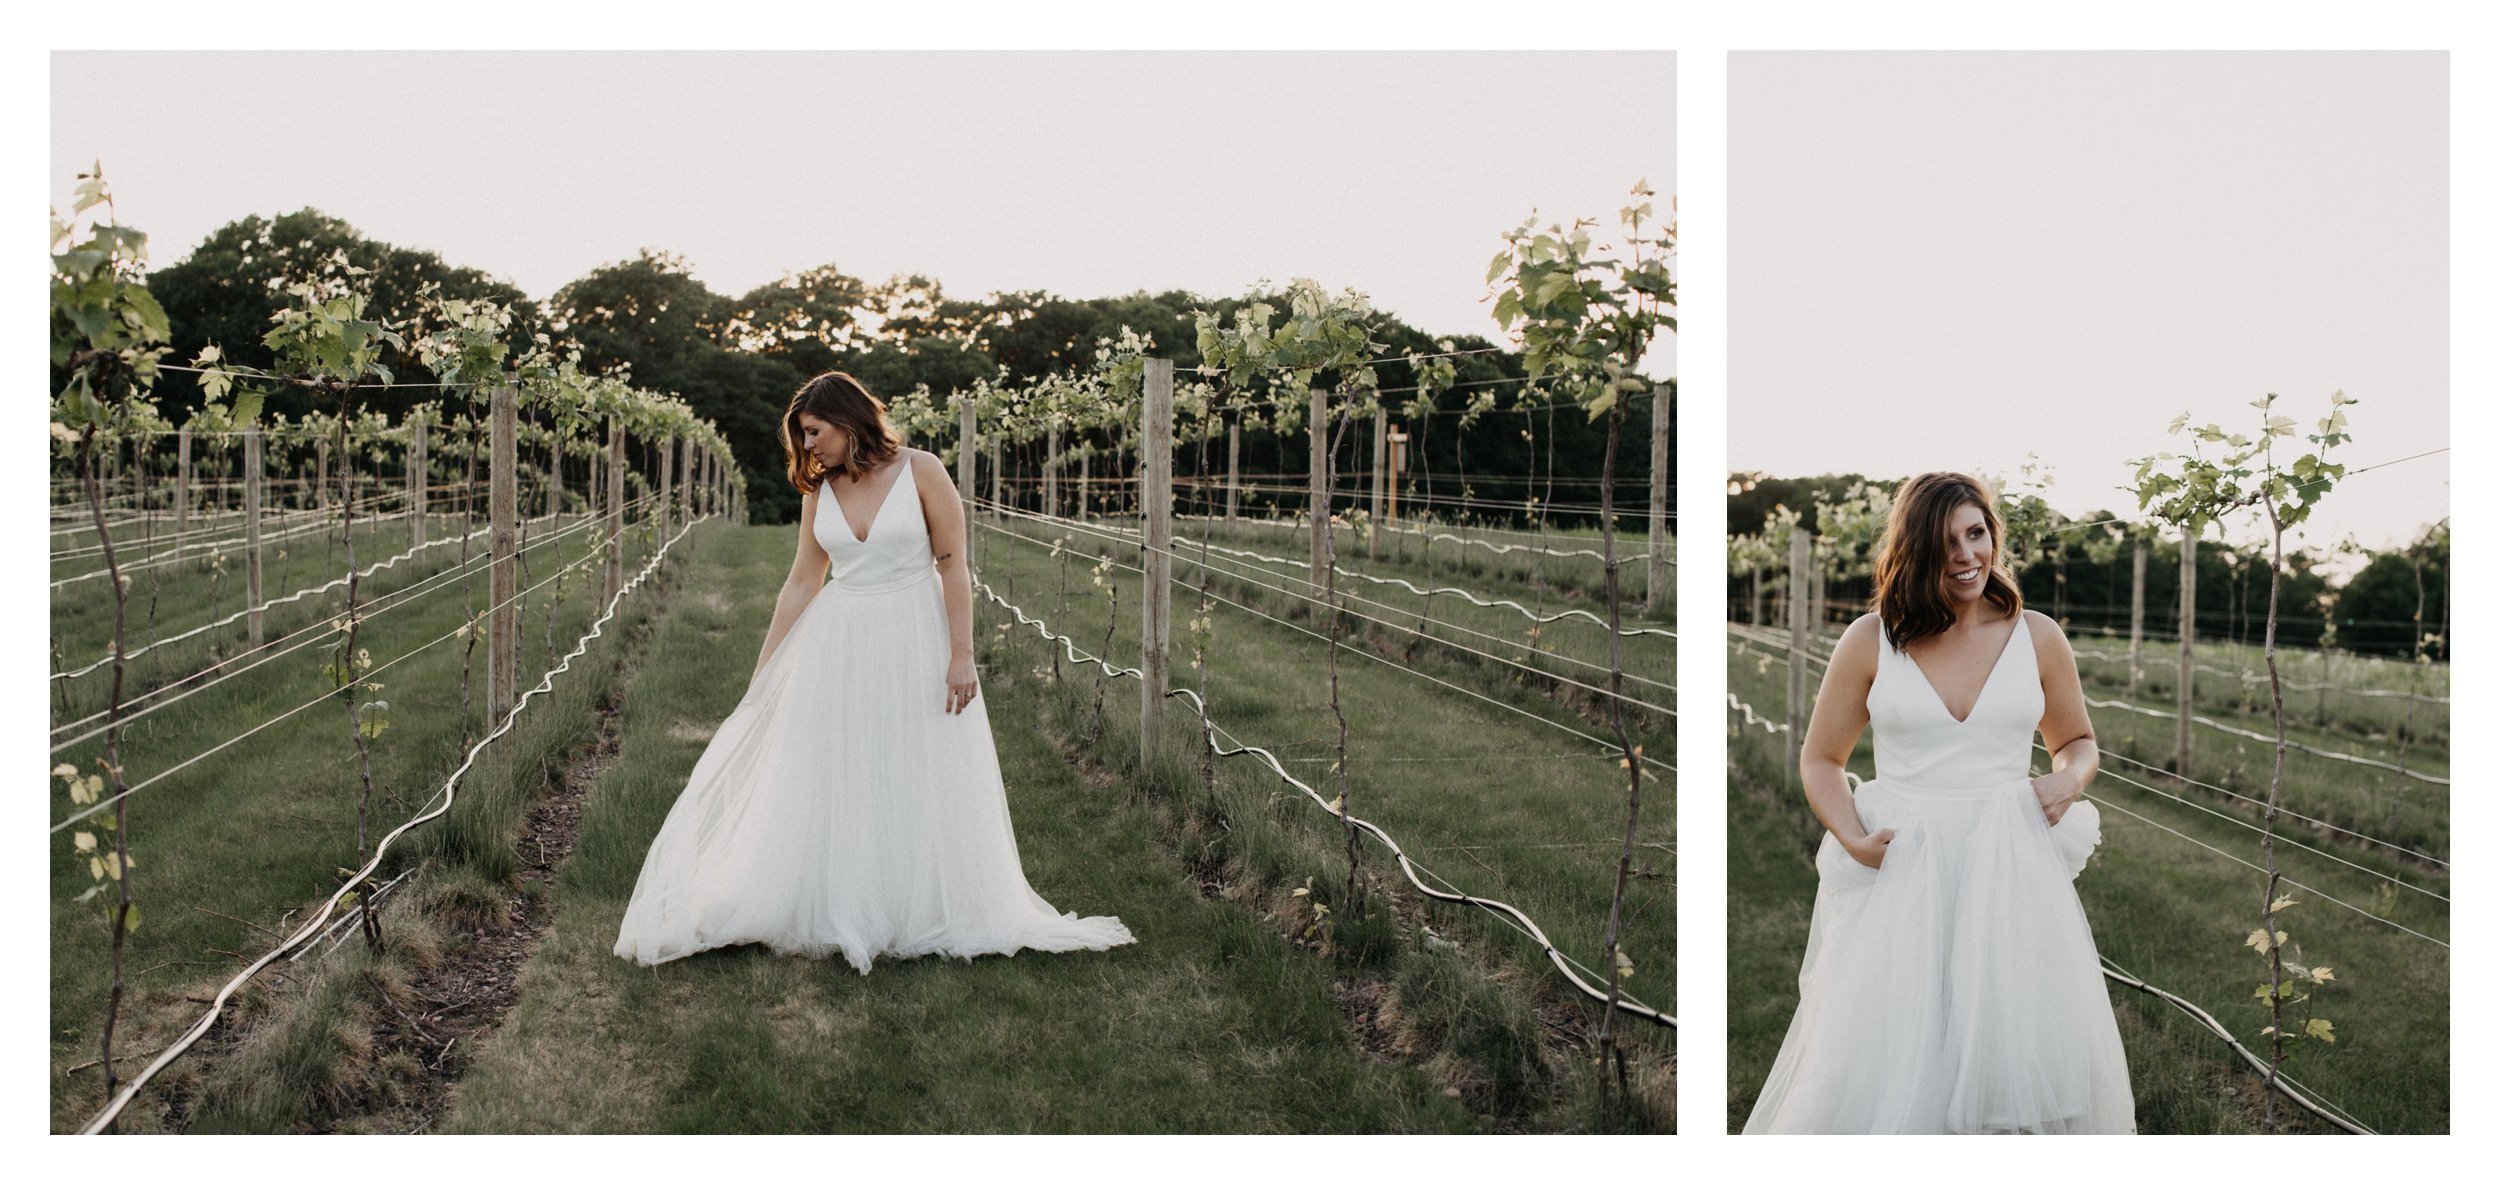 Bride walking in vineyard during sunset at Minnesota winery wedding